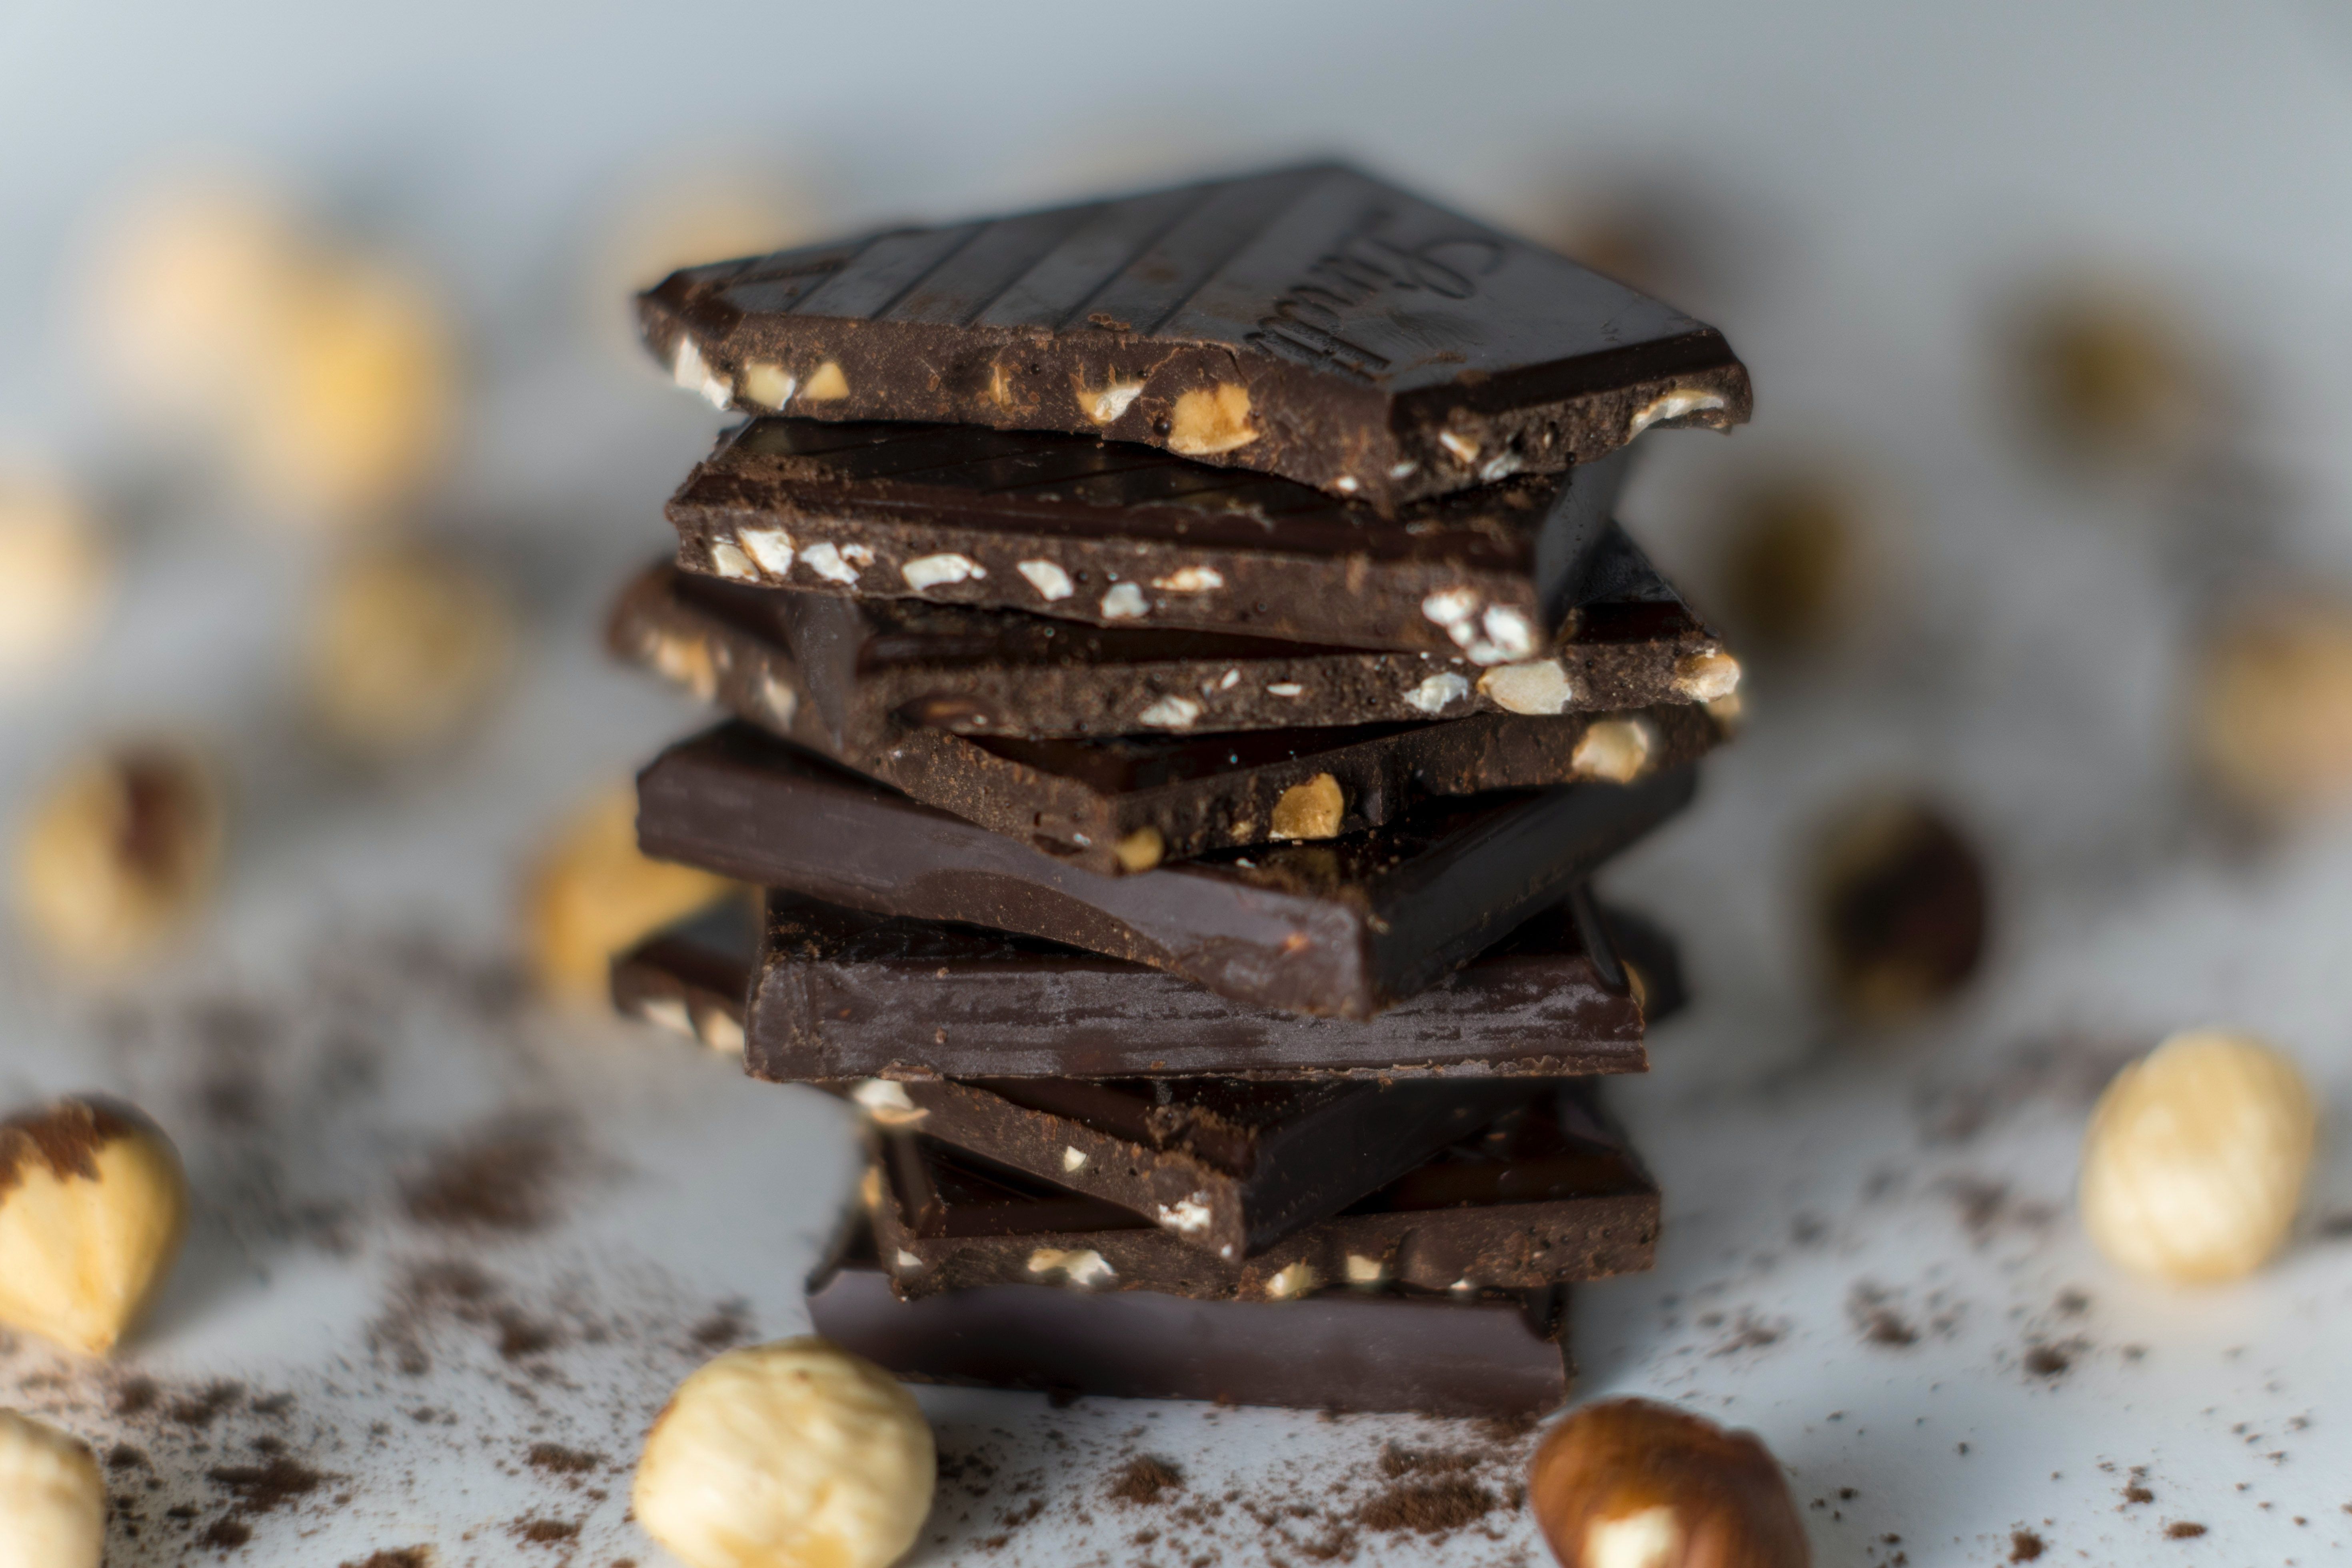 Livraison de Chocolat en Suisse - Planète Chocolat